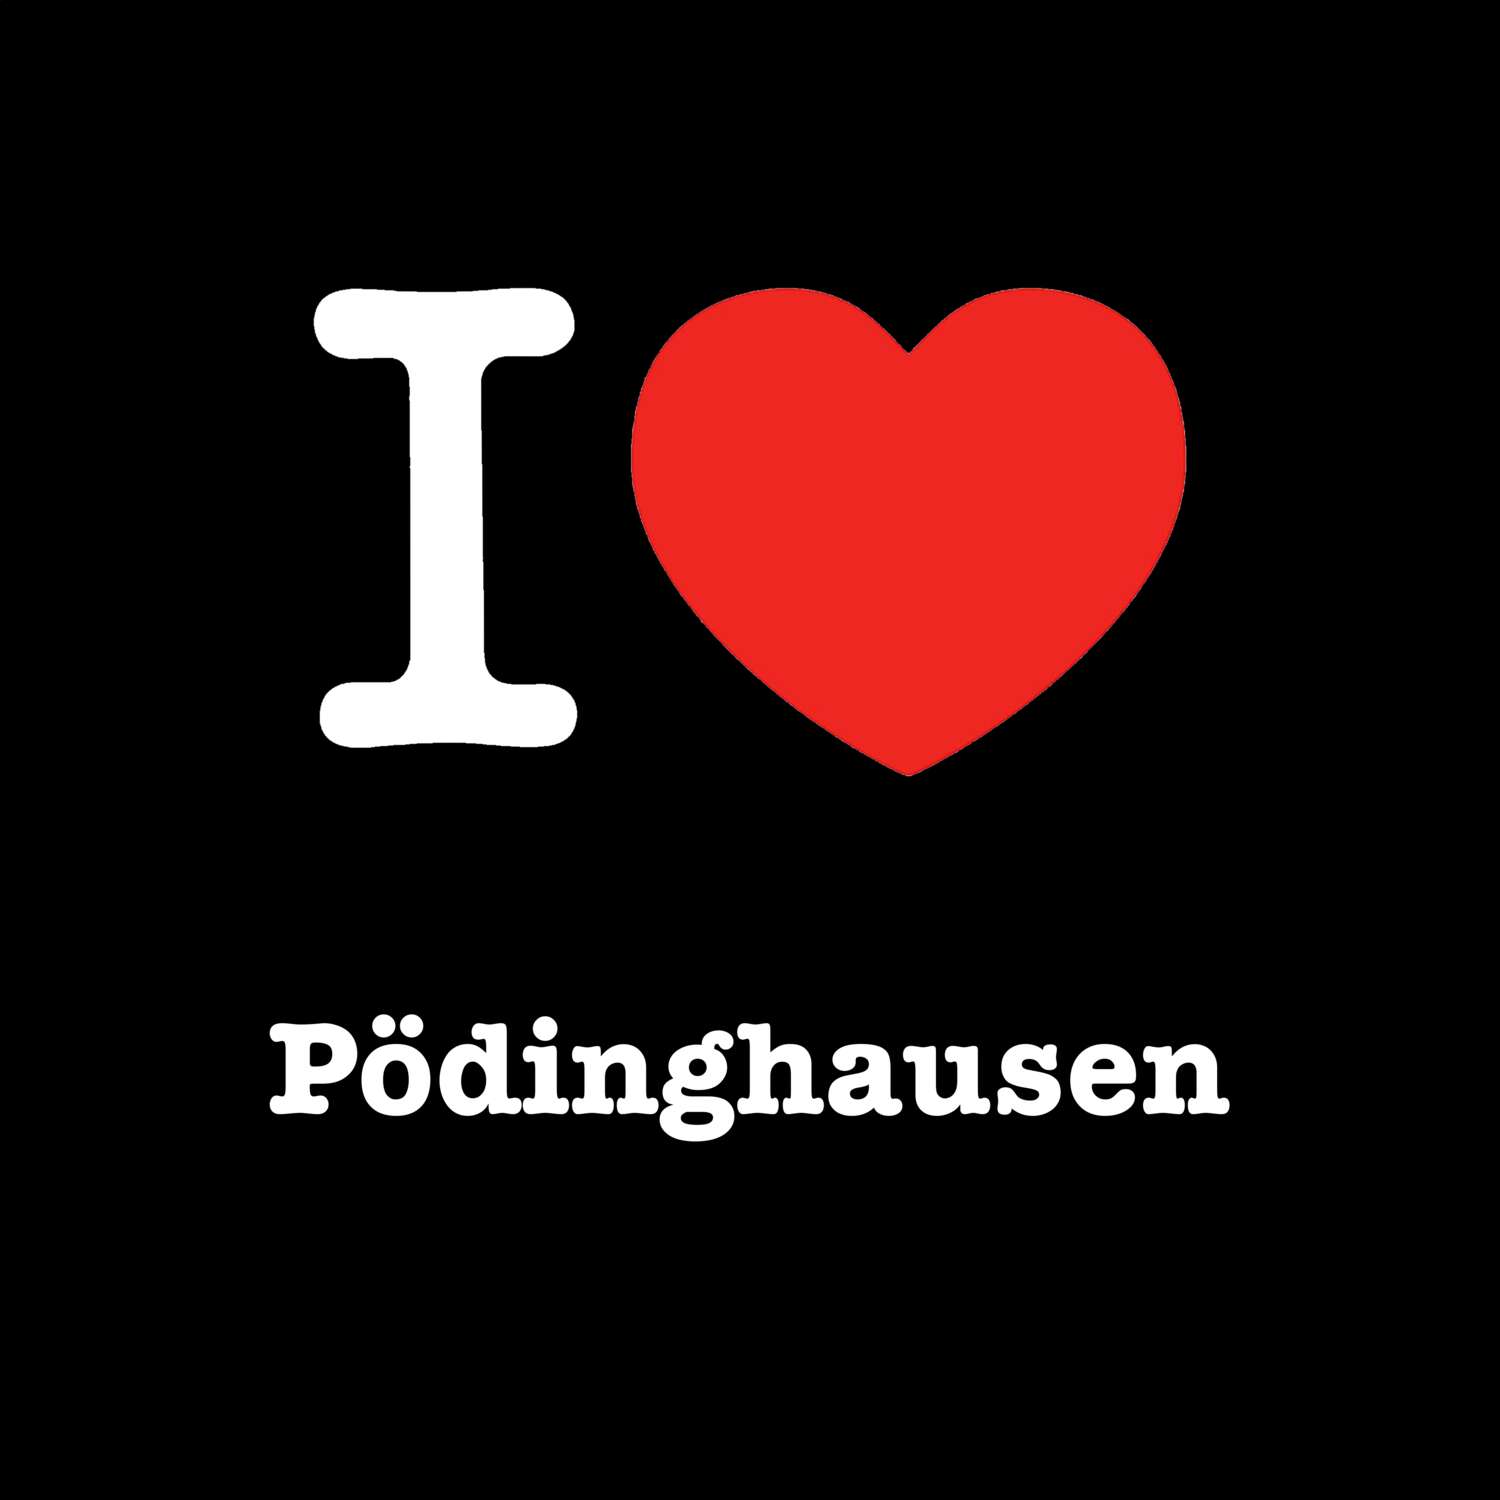 Pödinghausen T-Shirt »I love«